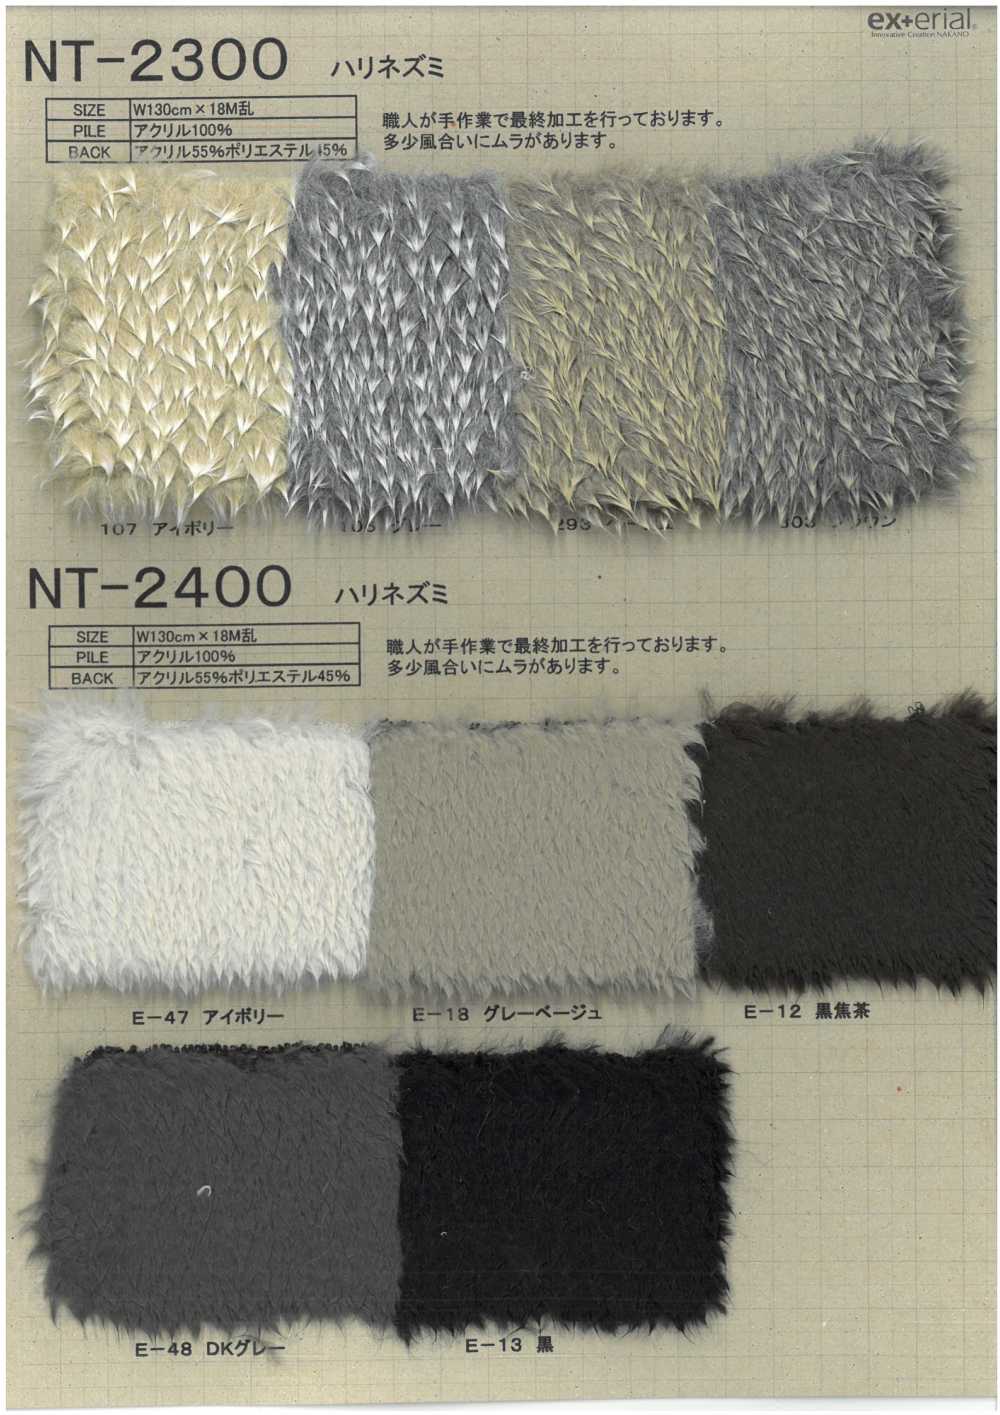 NT-2400 Fourrure Artisanale [Hérisson][Fabrication De Textile] Industrie Du Jersey Nakano